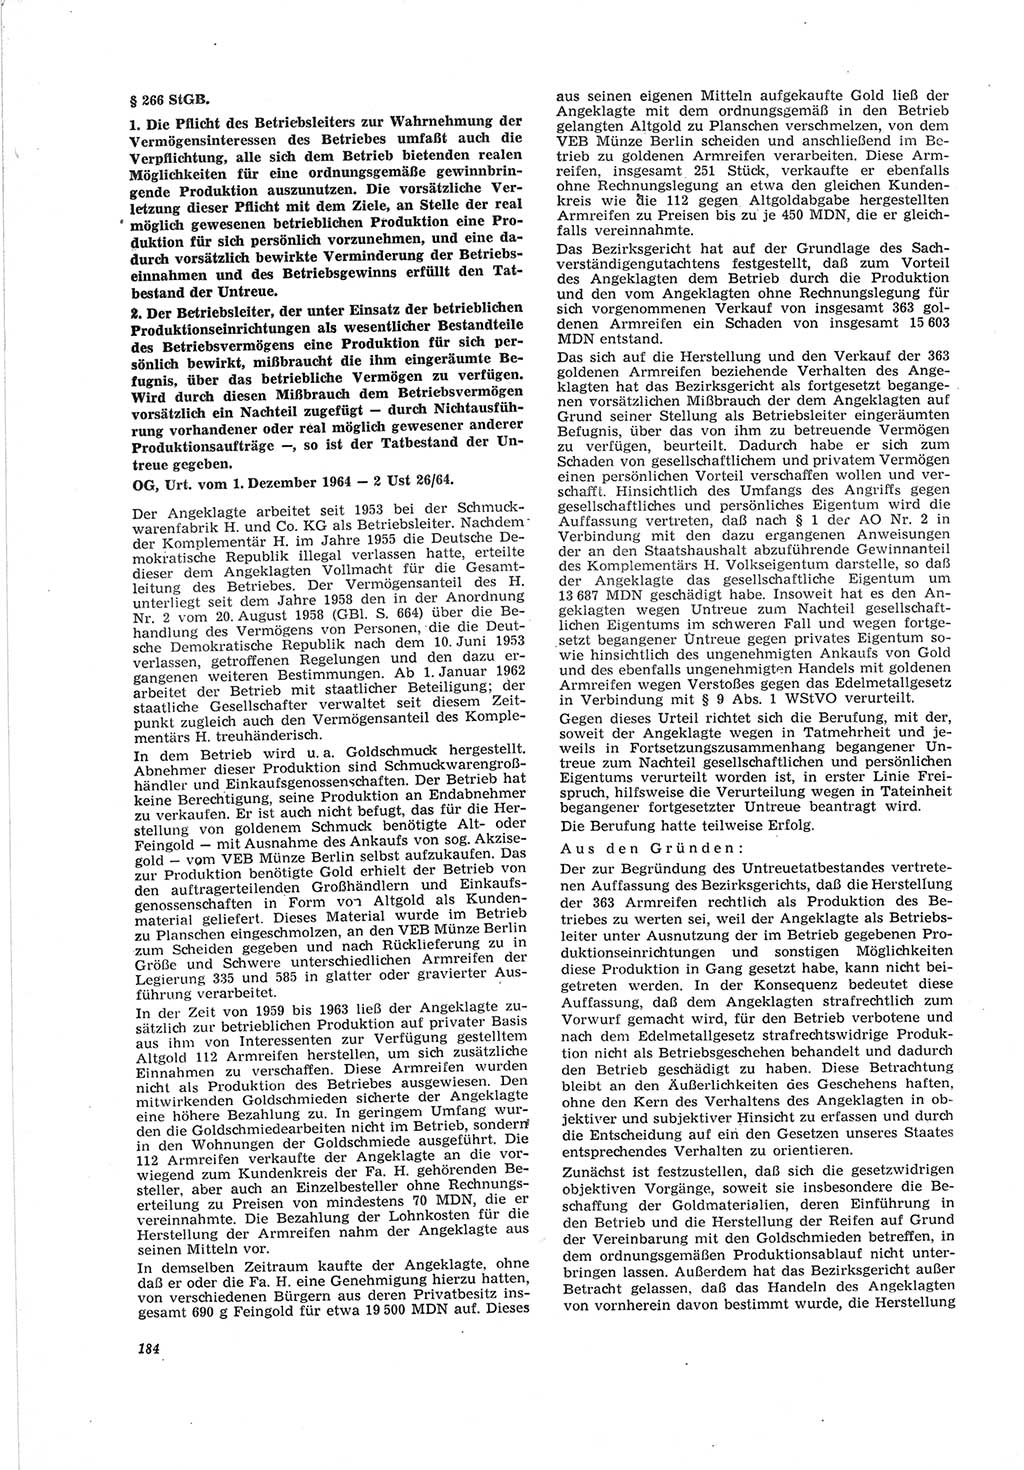 Neue Justiz (NJ), Zeitschrift für Recht und Rechtswissenschaft [Deutsche Demokratische Republik (DDR)], 19. Jahrgang 1965, Seite 184 (NJ DDR 1965, S. 184)